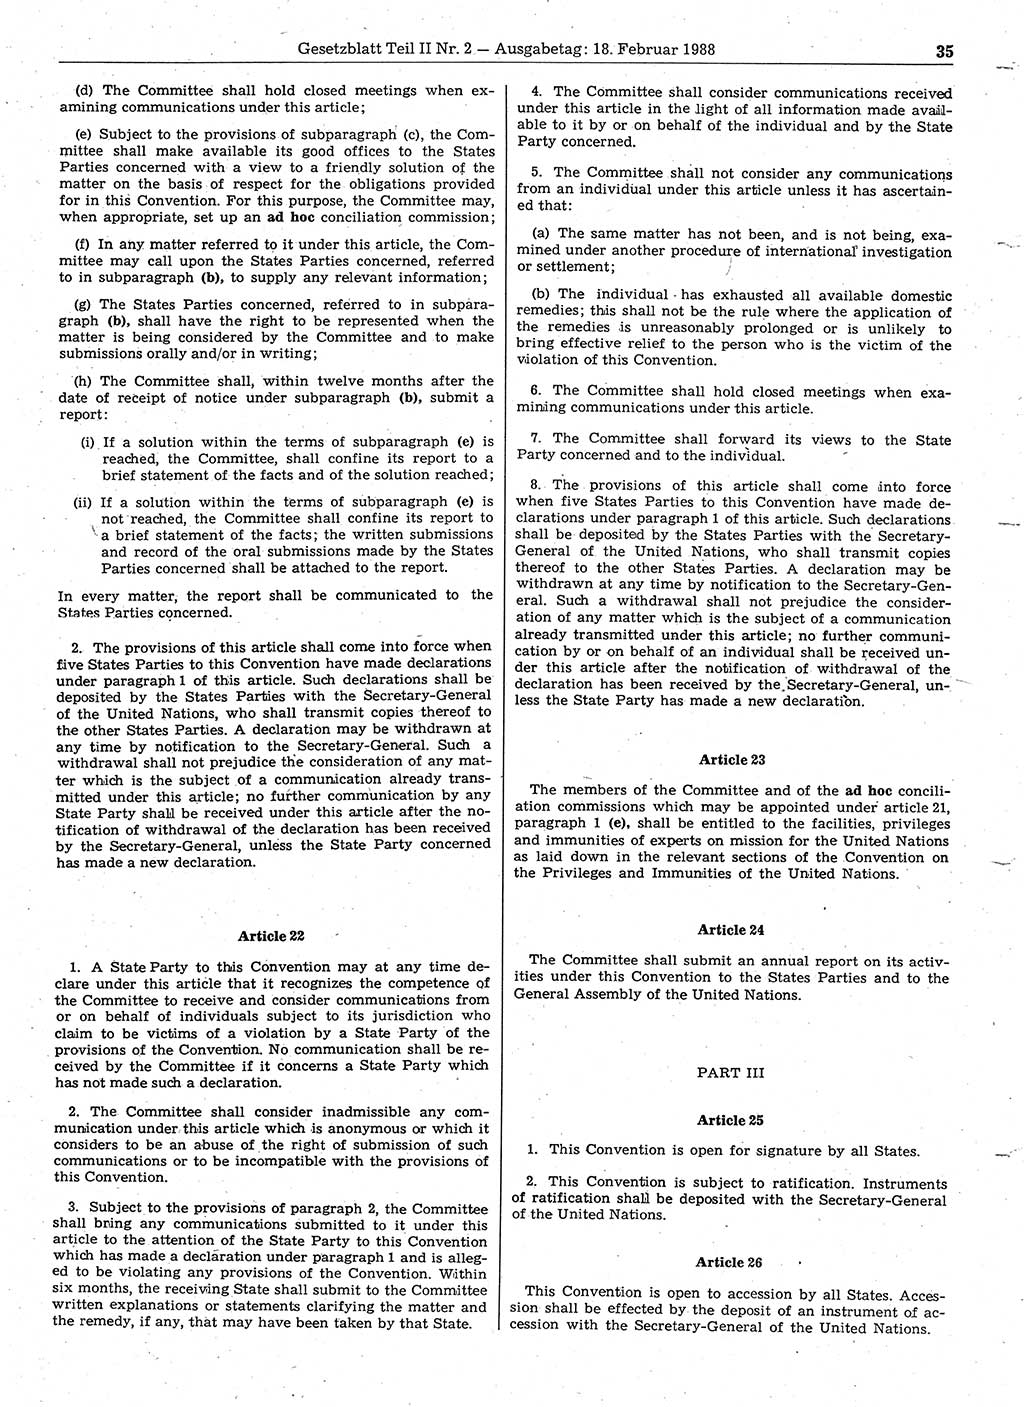 Gesetzblatt (GBl.) der Deutschen Demokratischen Republik (DDR) Teil ⅠⅠ 1988, Seite 35 (GBl. DDR ⅠⅠ 1988, S. 35)